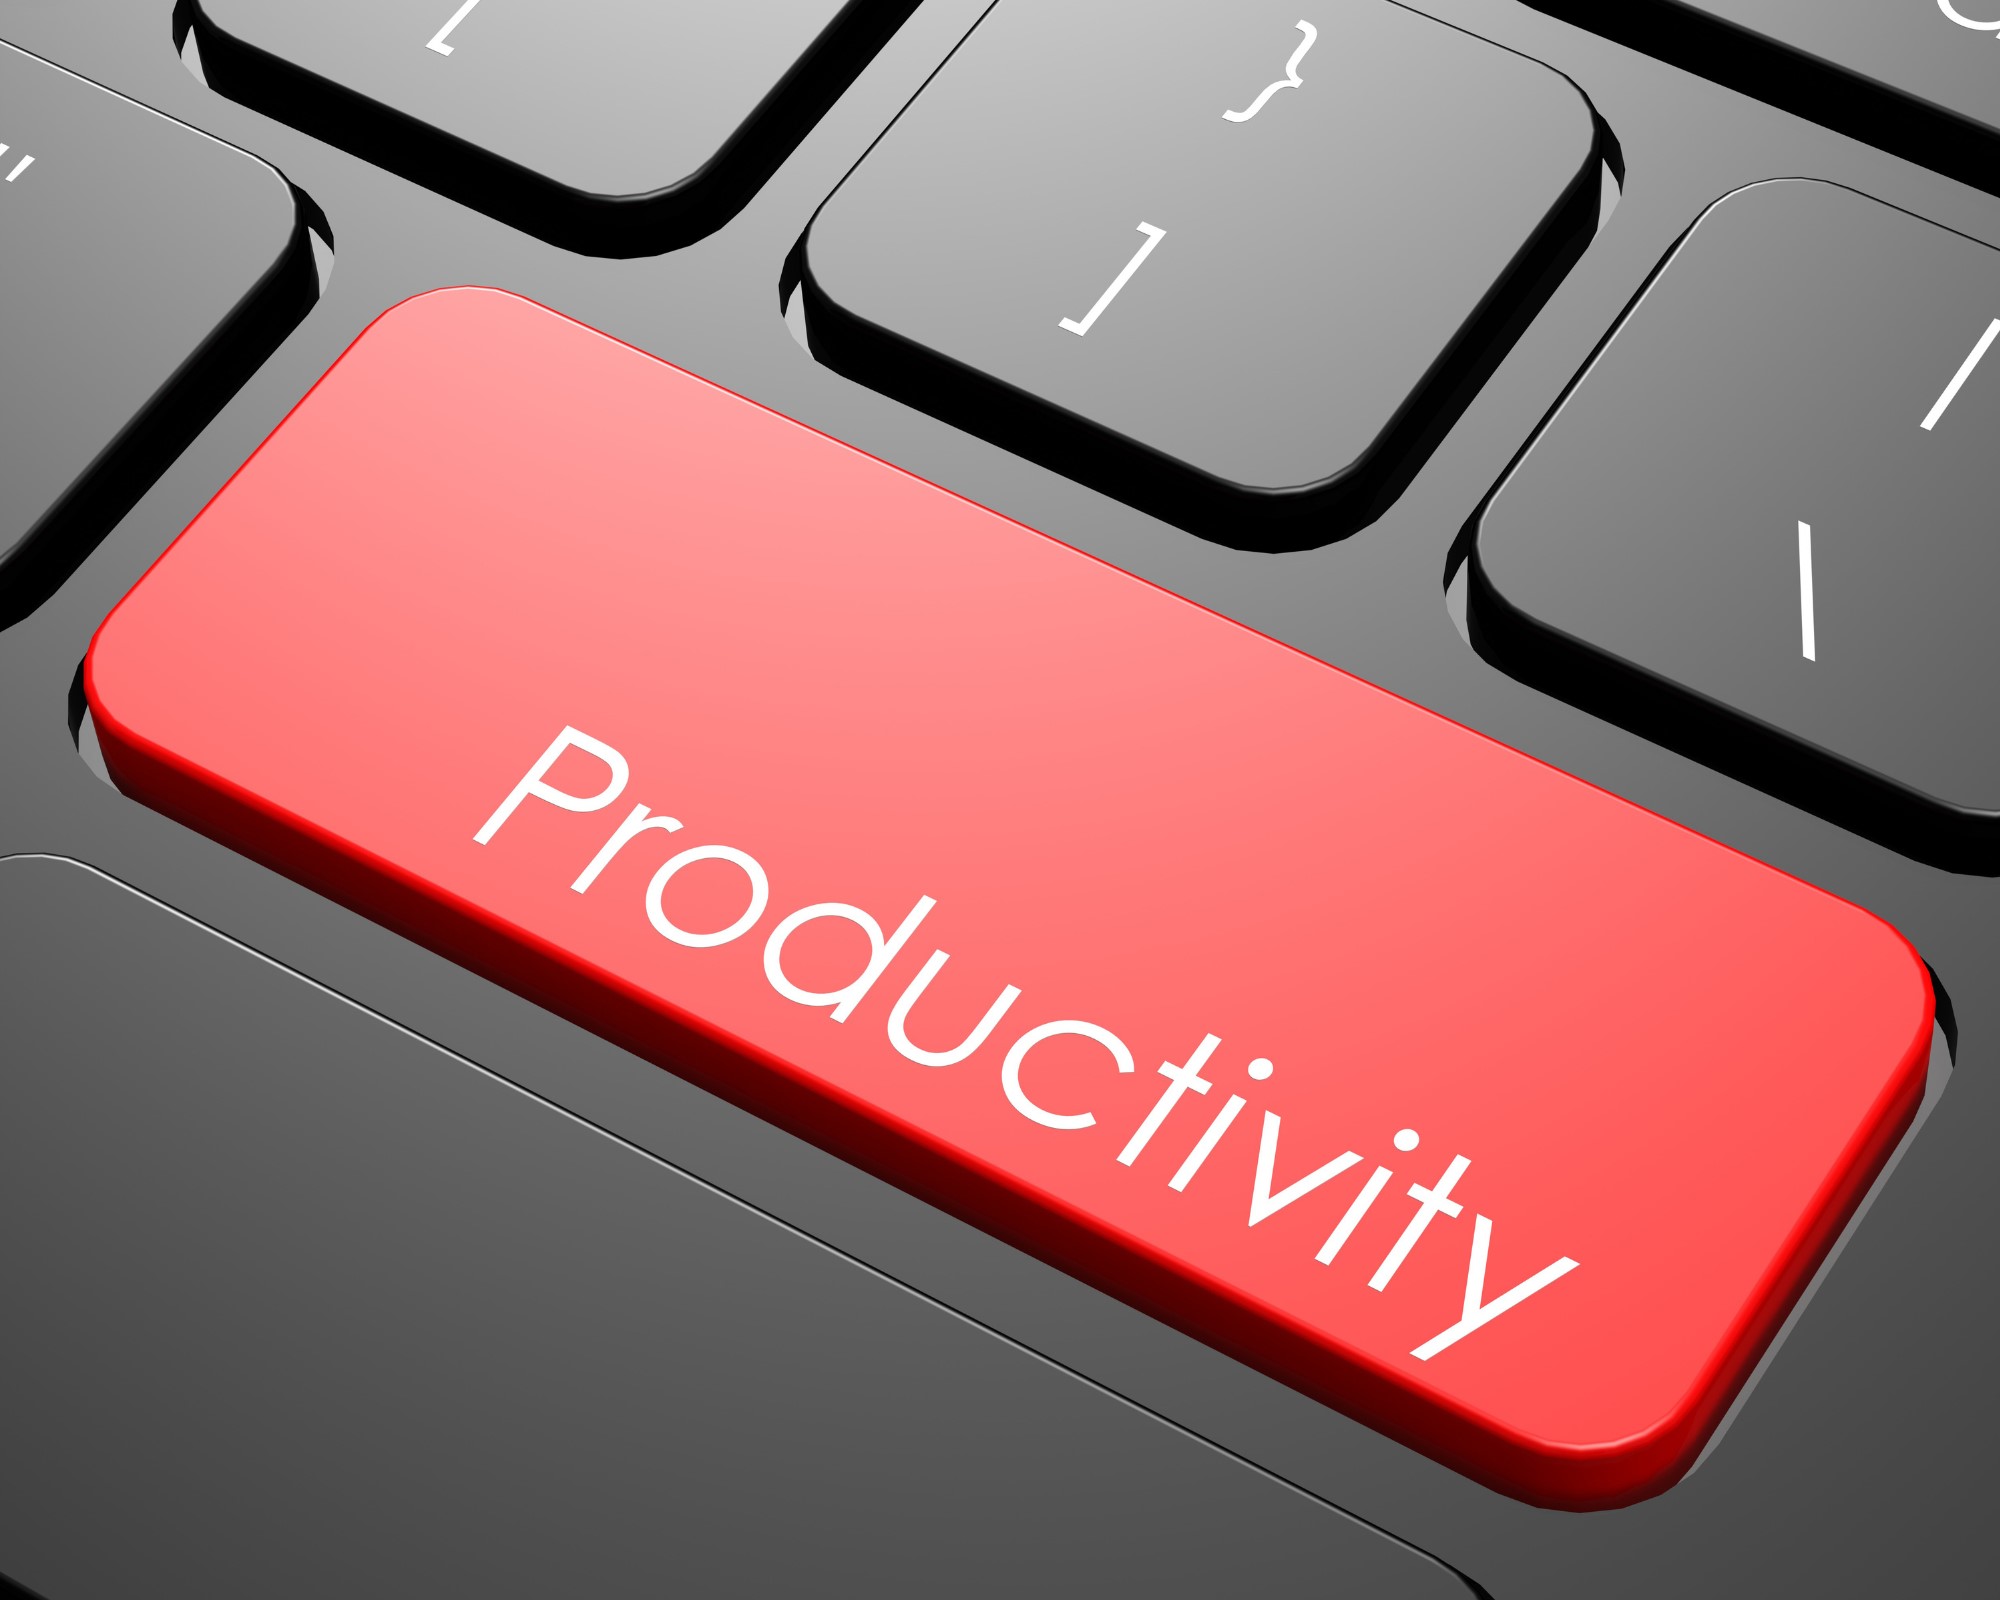 Les 20 secrets pour améliorer sa productivité durablement avec des conseils pratiques pour y parvenir